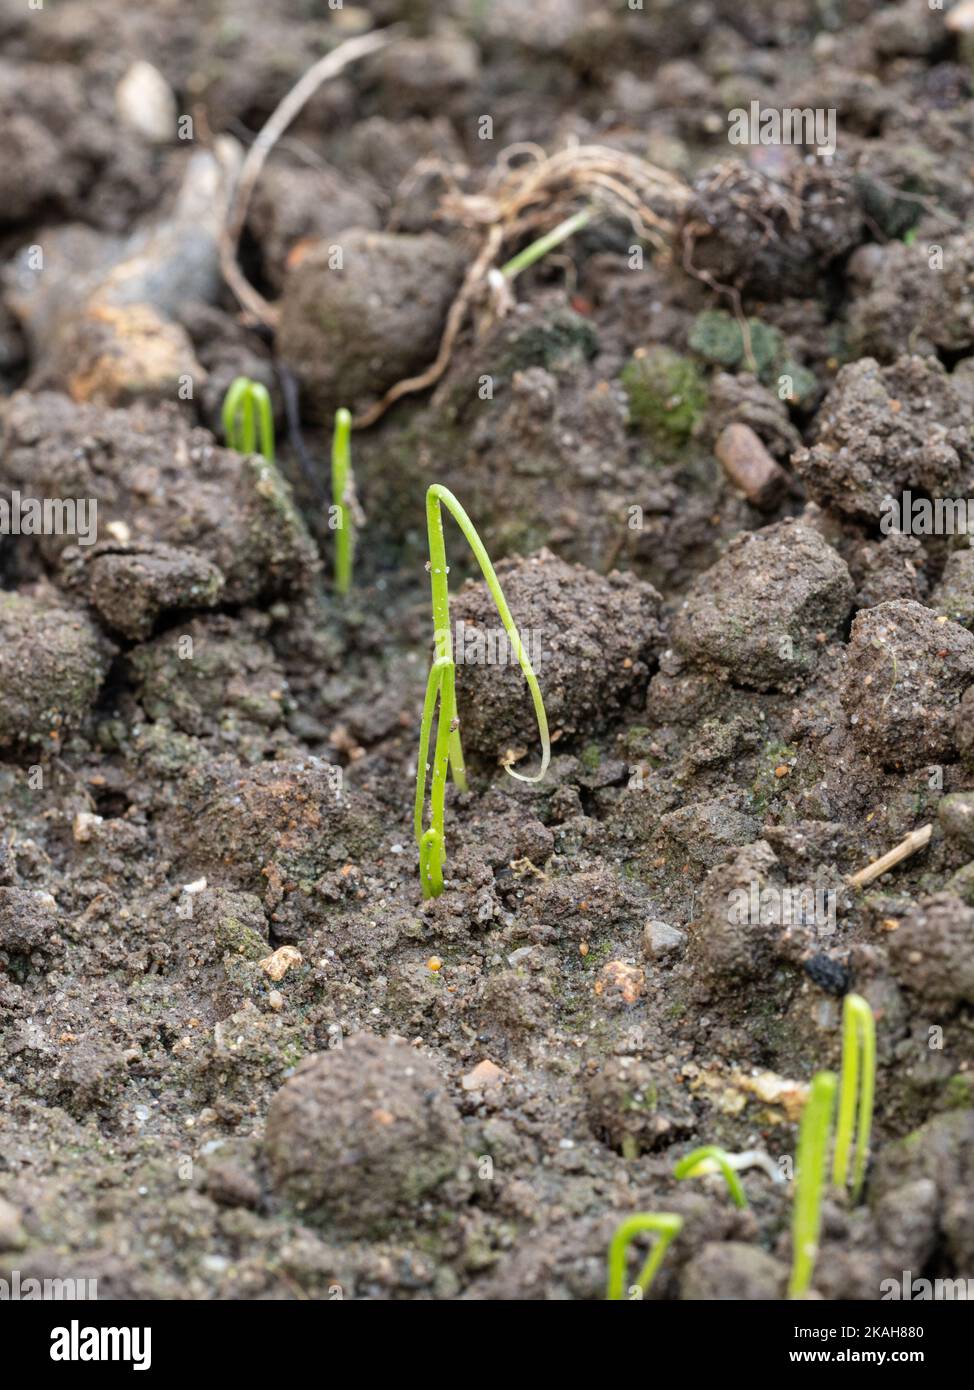 Un gros plan de semis d'oignon nouveau germé montrant le cotylédon en boucle typique Banque D'Images